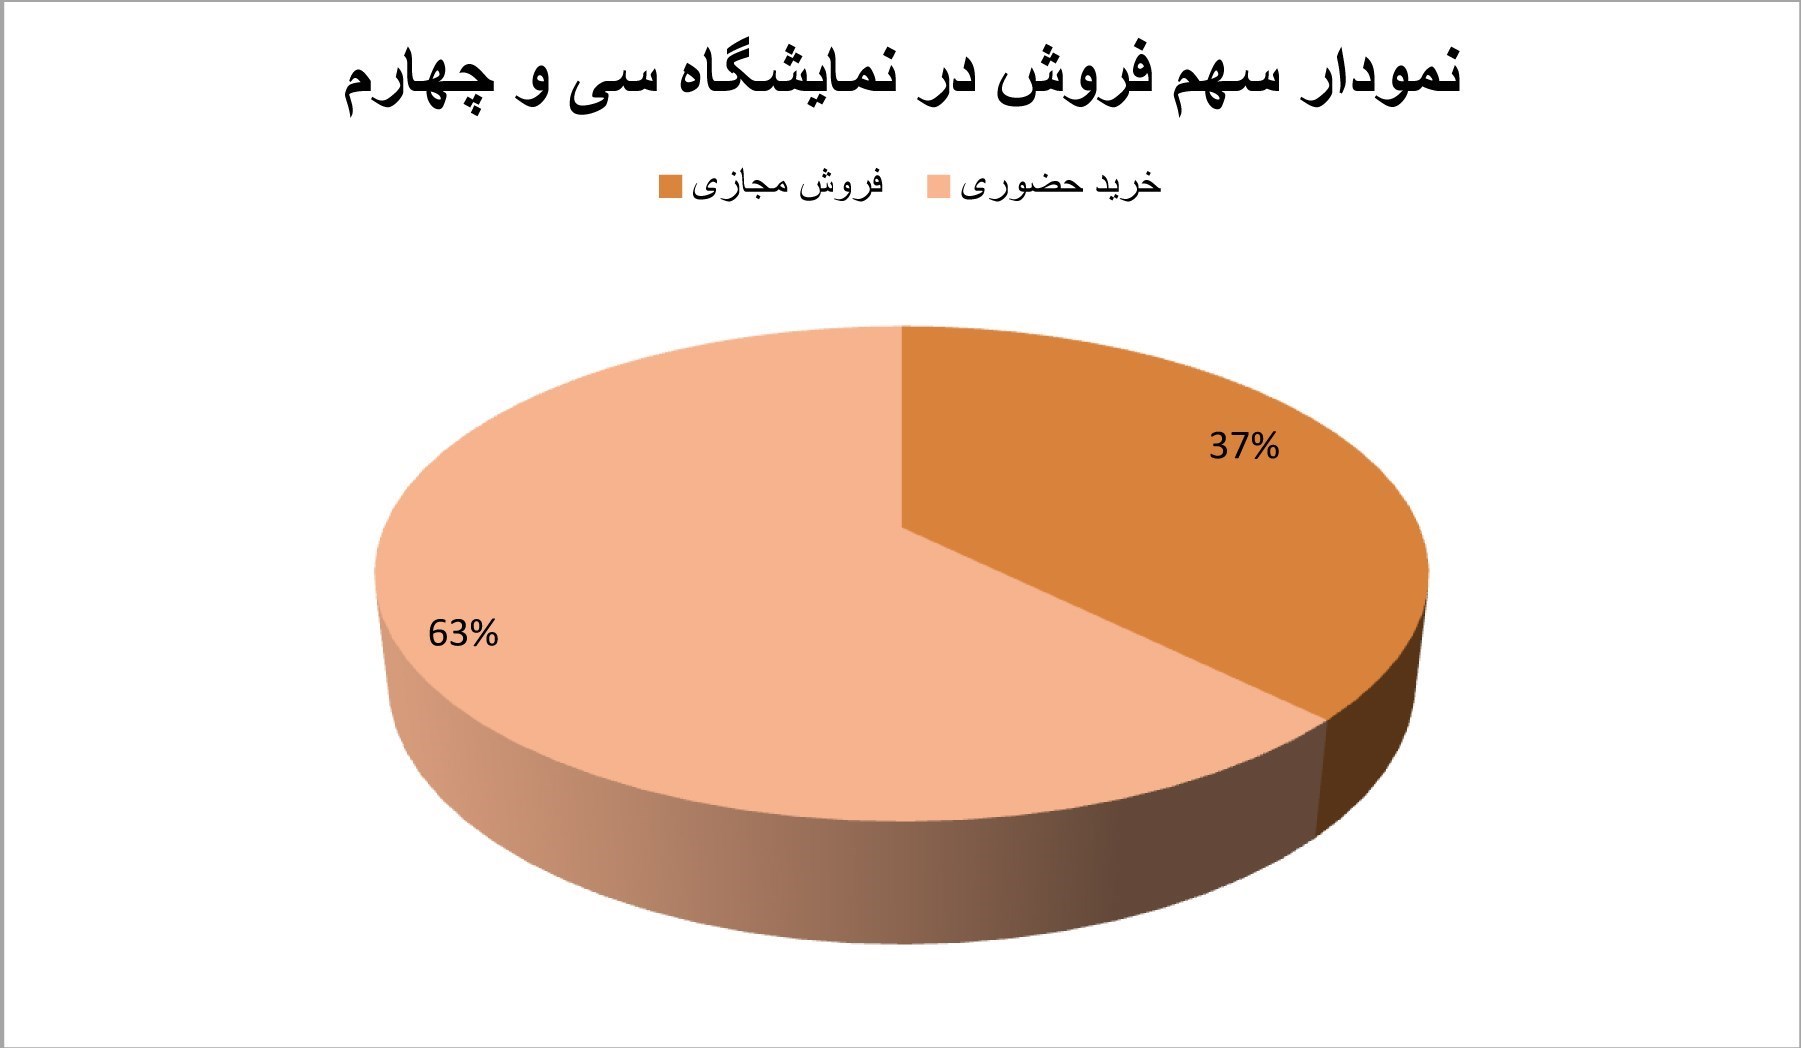 نمایشگاه کتاب تهران به روایت آمار